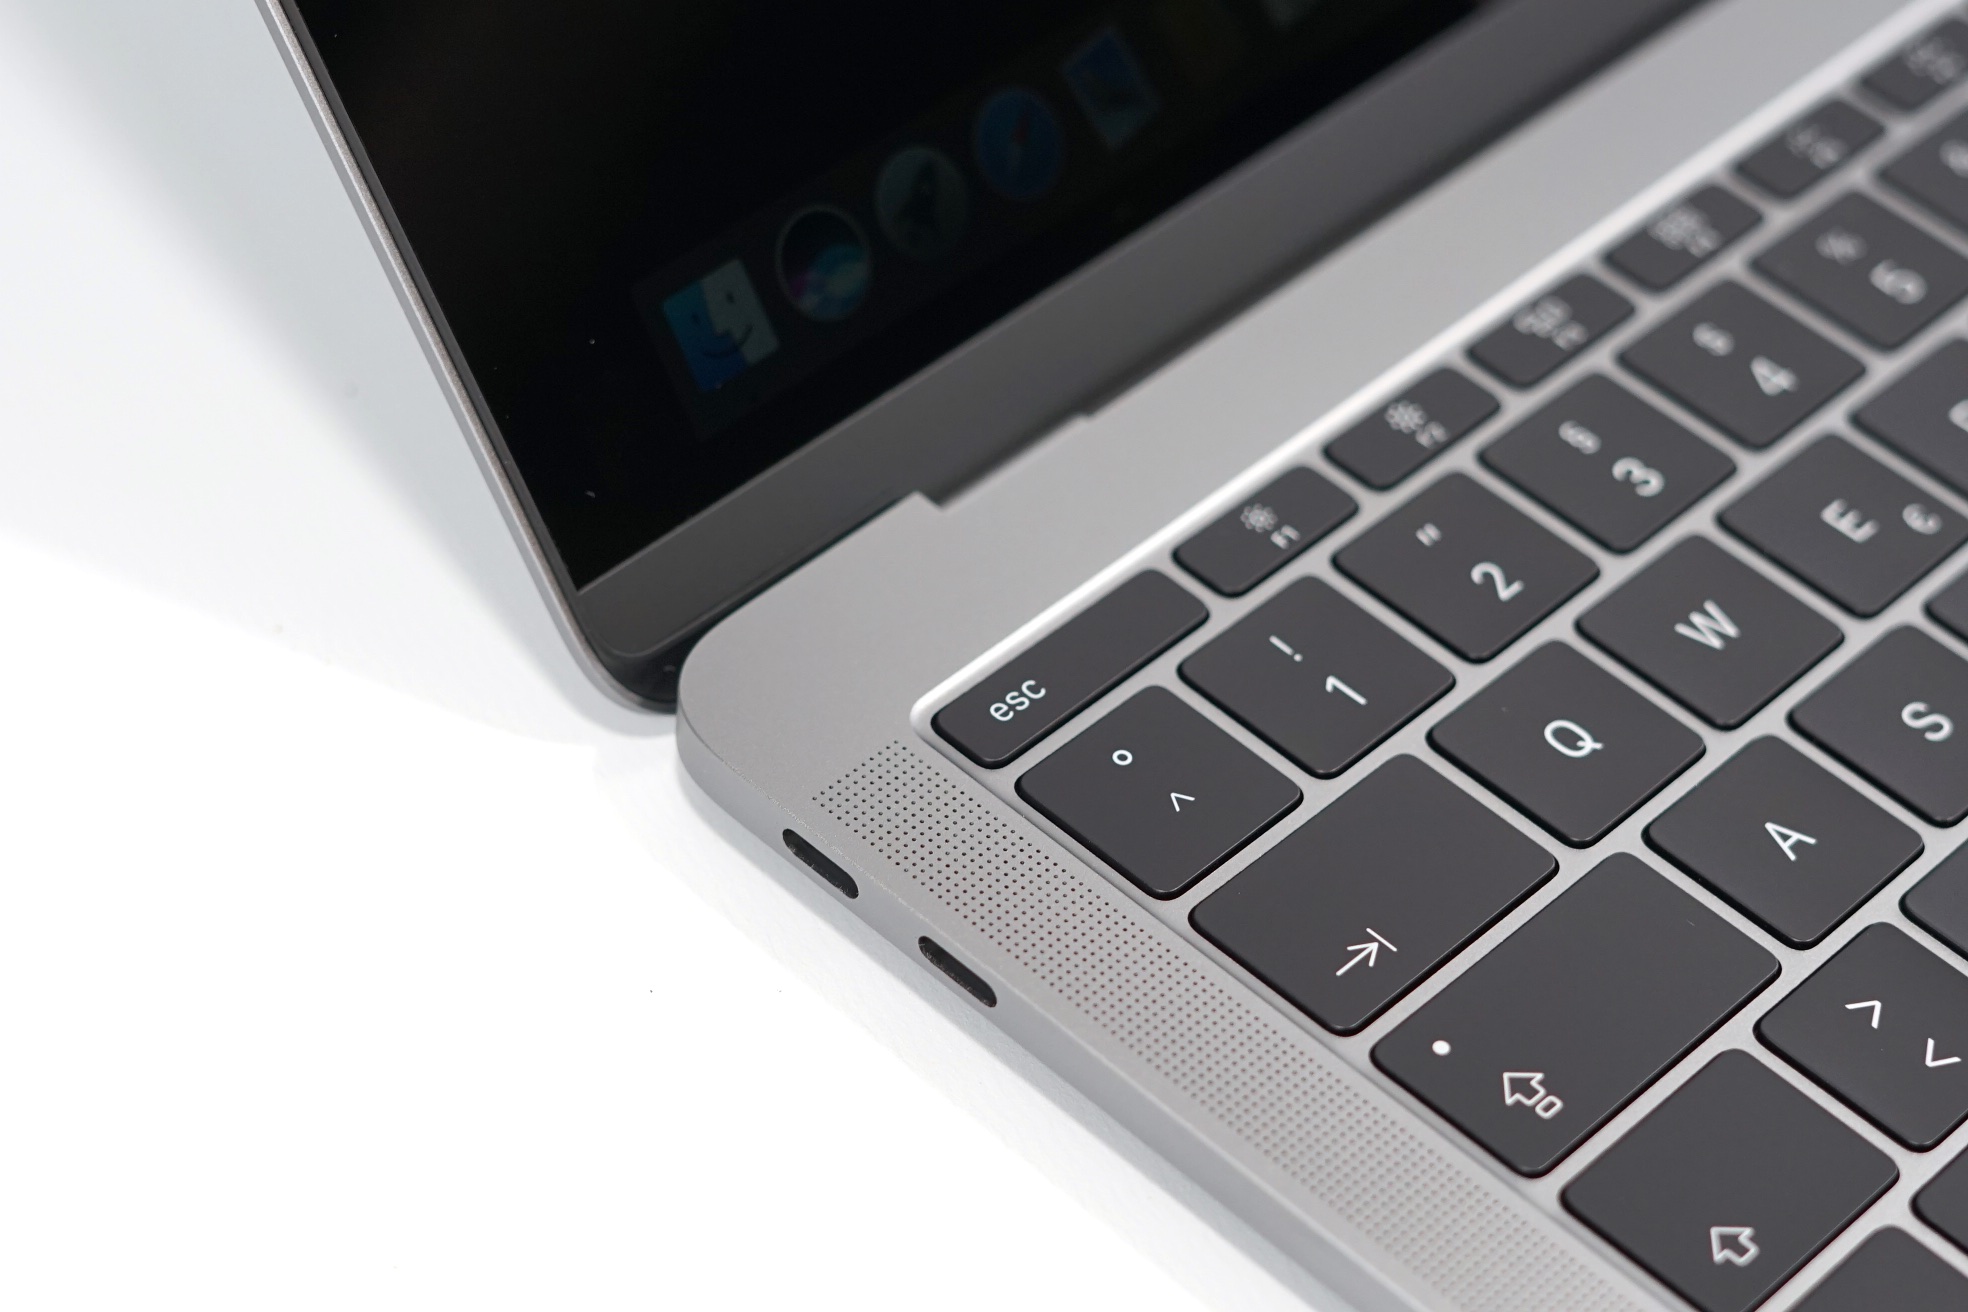 macbook pro 13.3 inch 2017